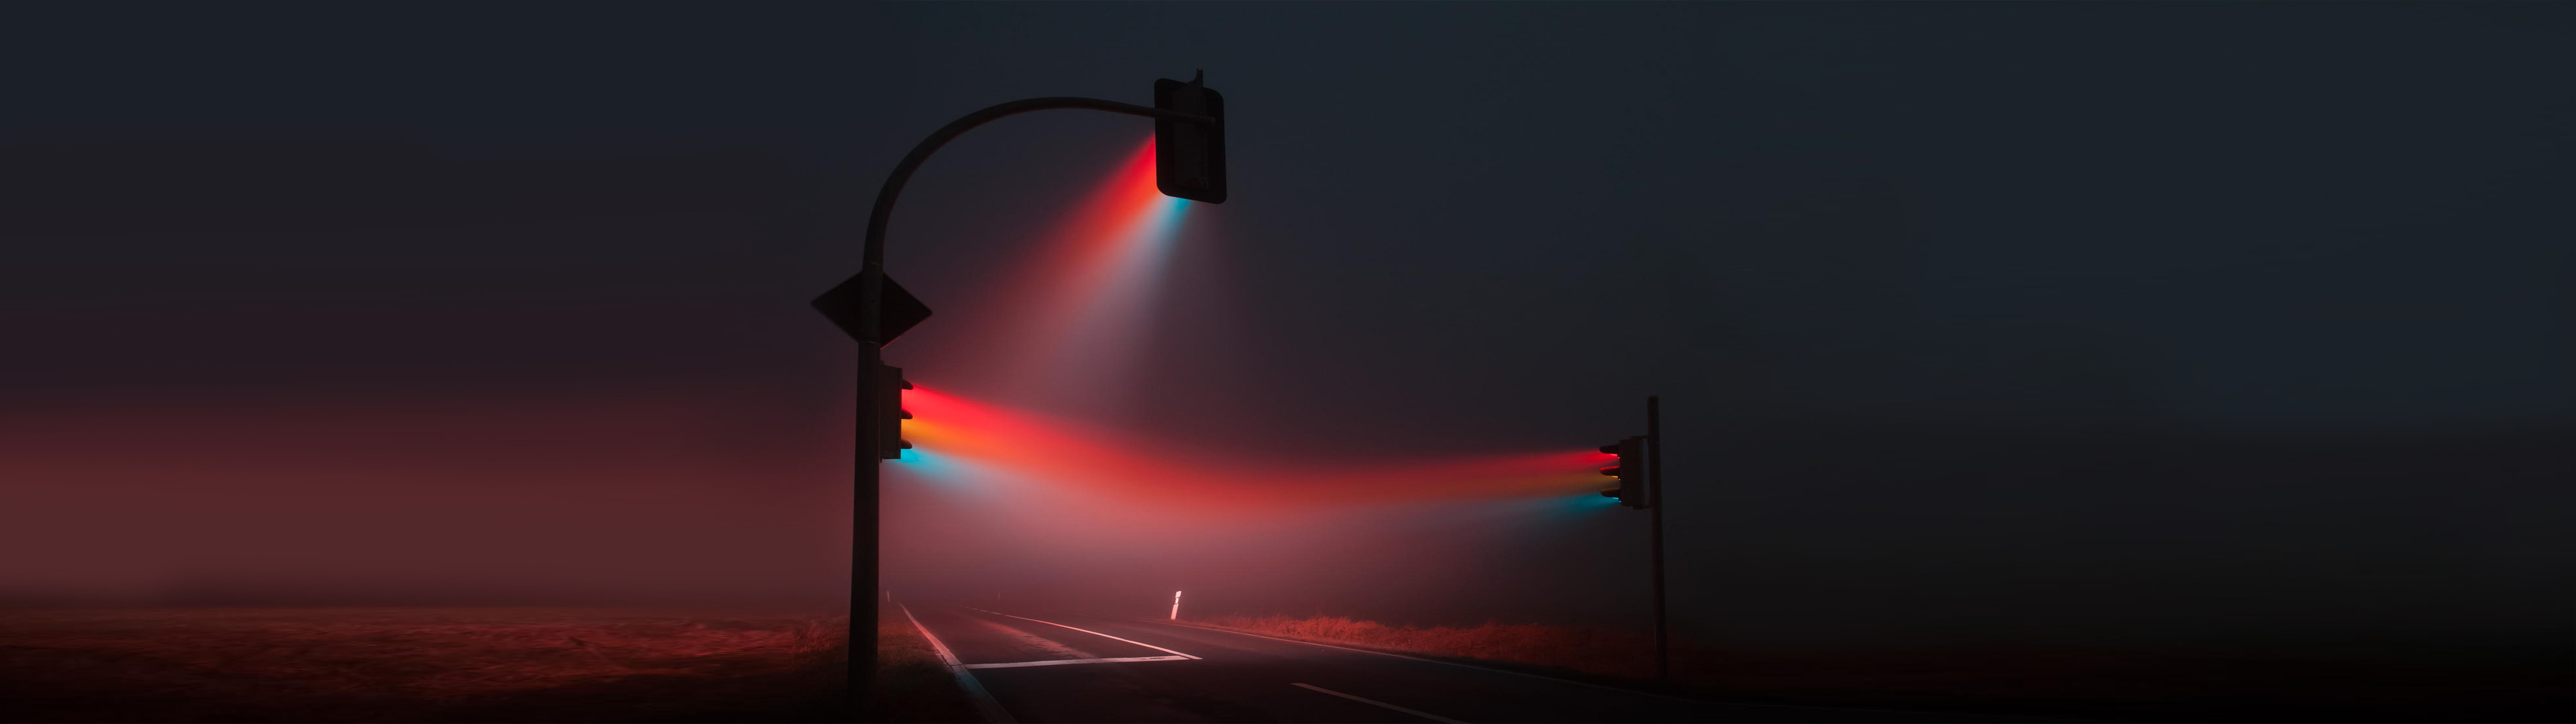 Traffic Light 4K wallpaper